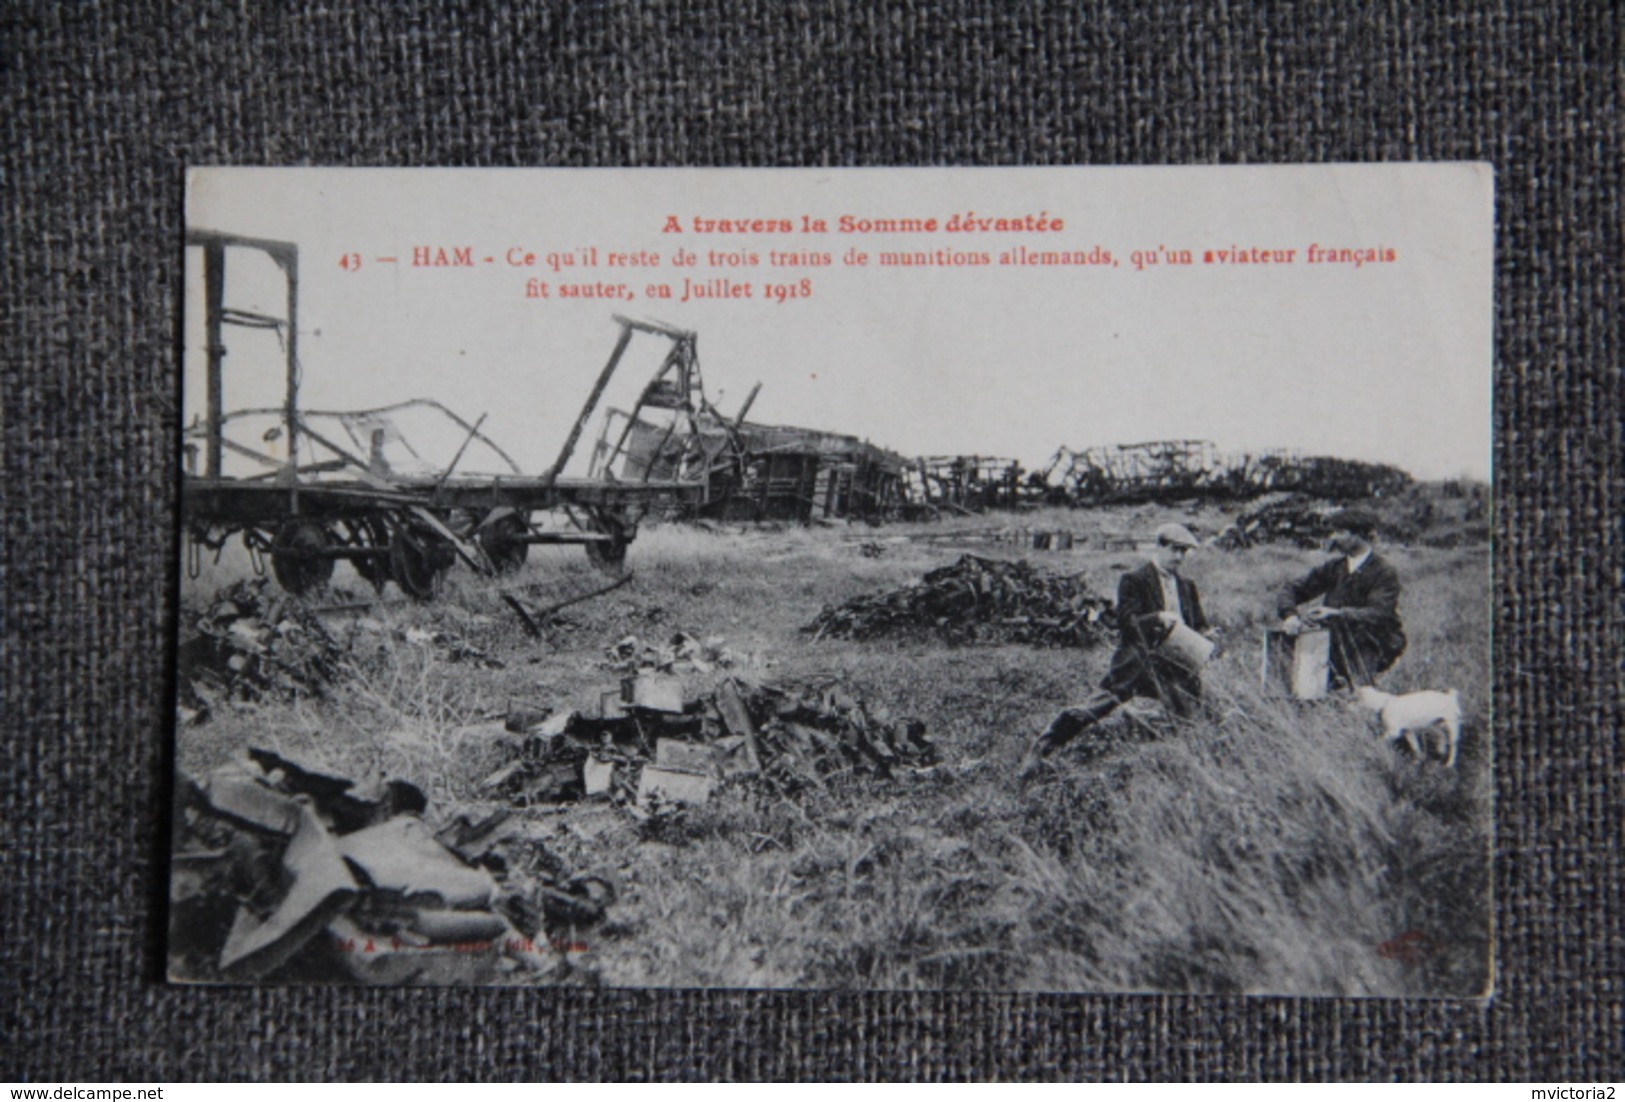 Guerre 1914 -18 : HAM, Ce Qu'il Reste De Trois Trains De Munitions Allemands Qu'un Aviateur Francais Fit Sauter En 1918 - Guerra 1914-18